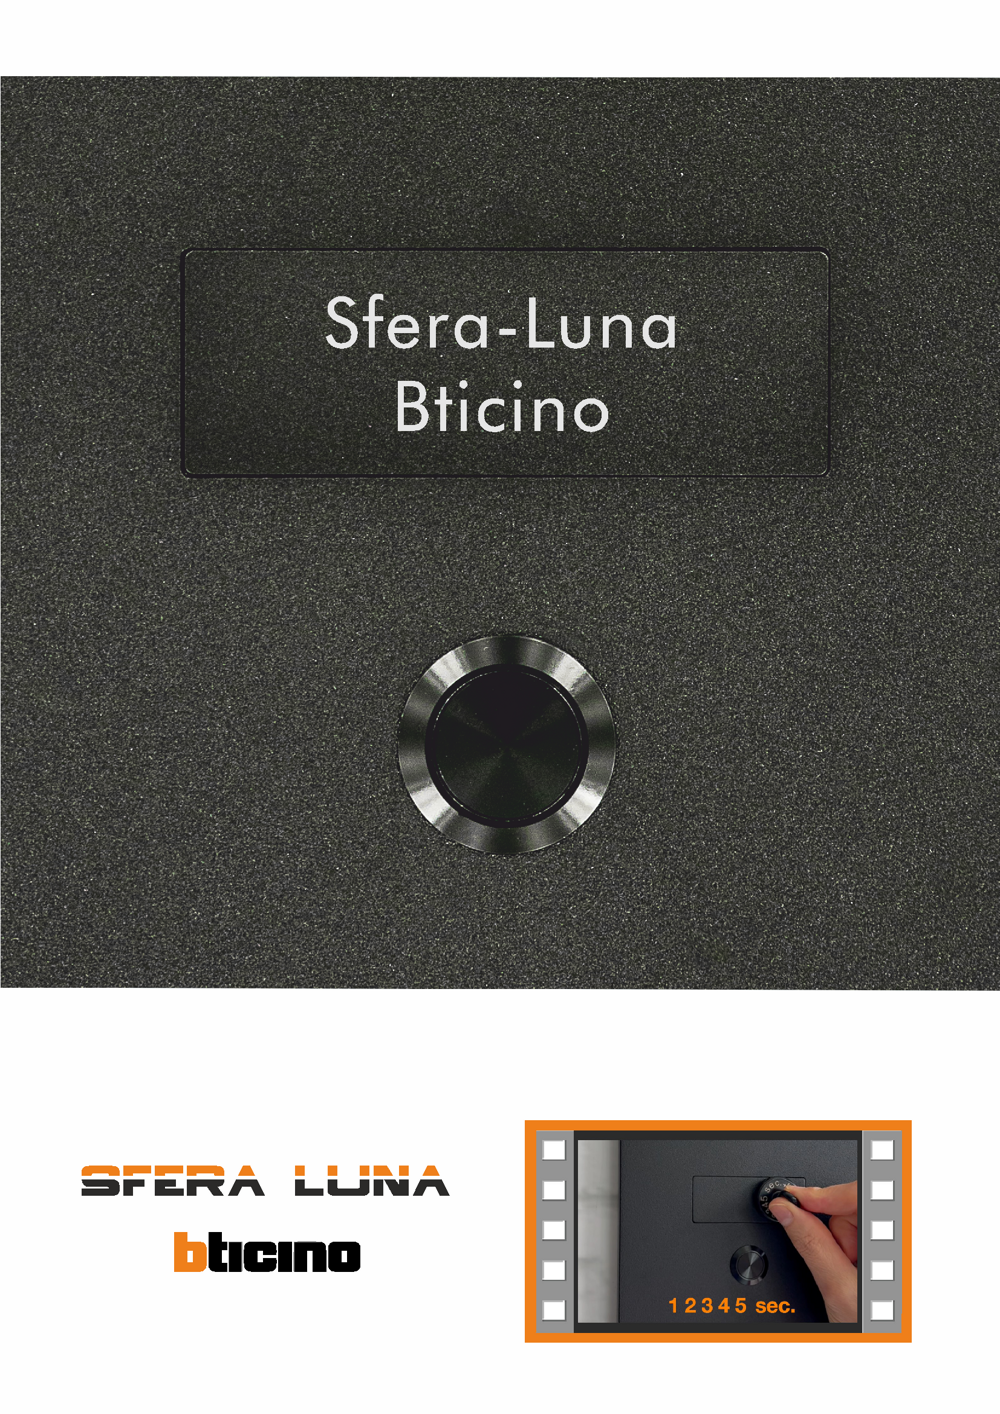 Lasered Name tag for SFERA LUNA Bticino